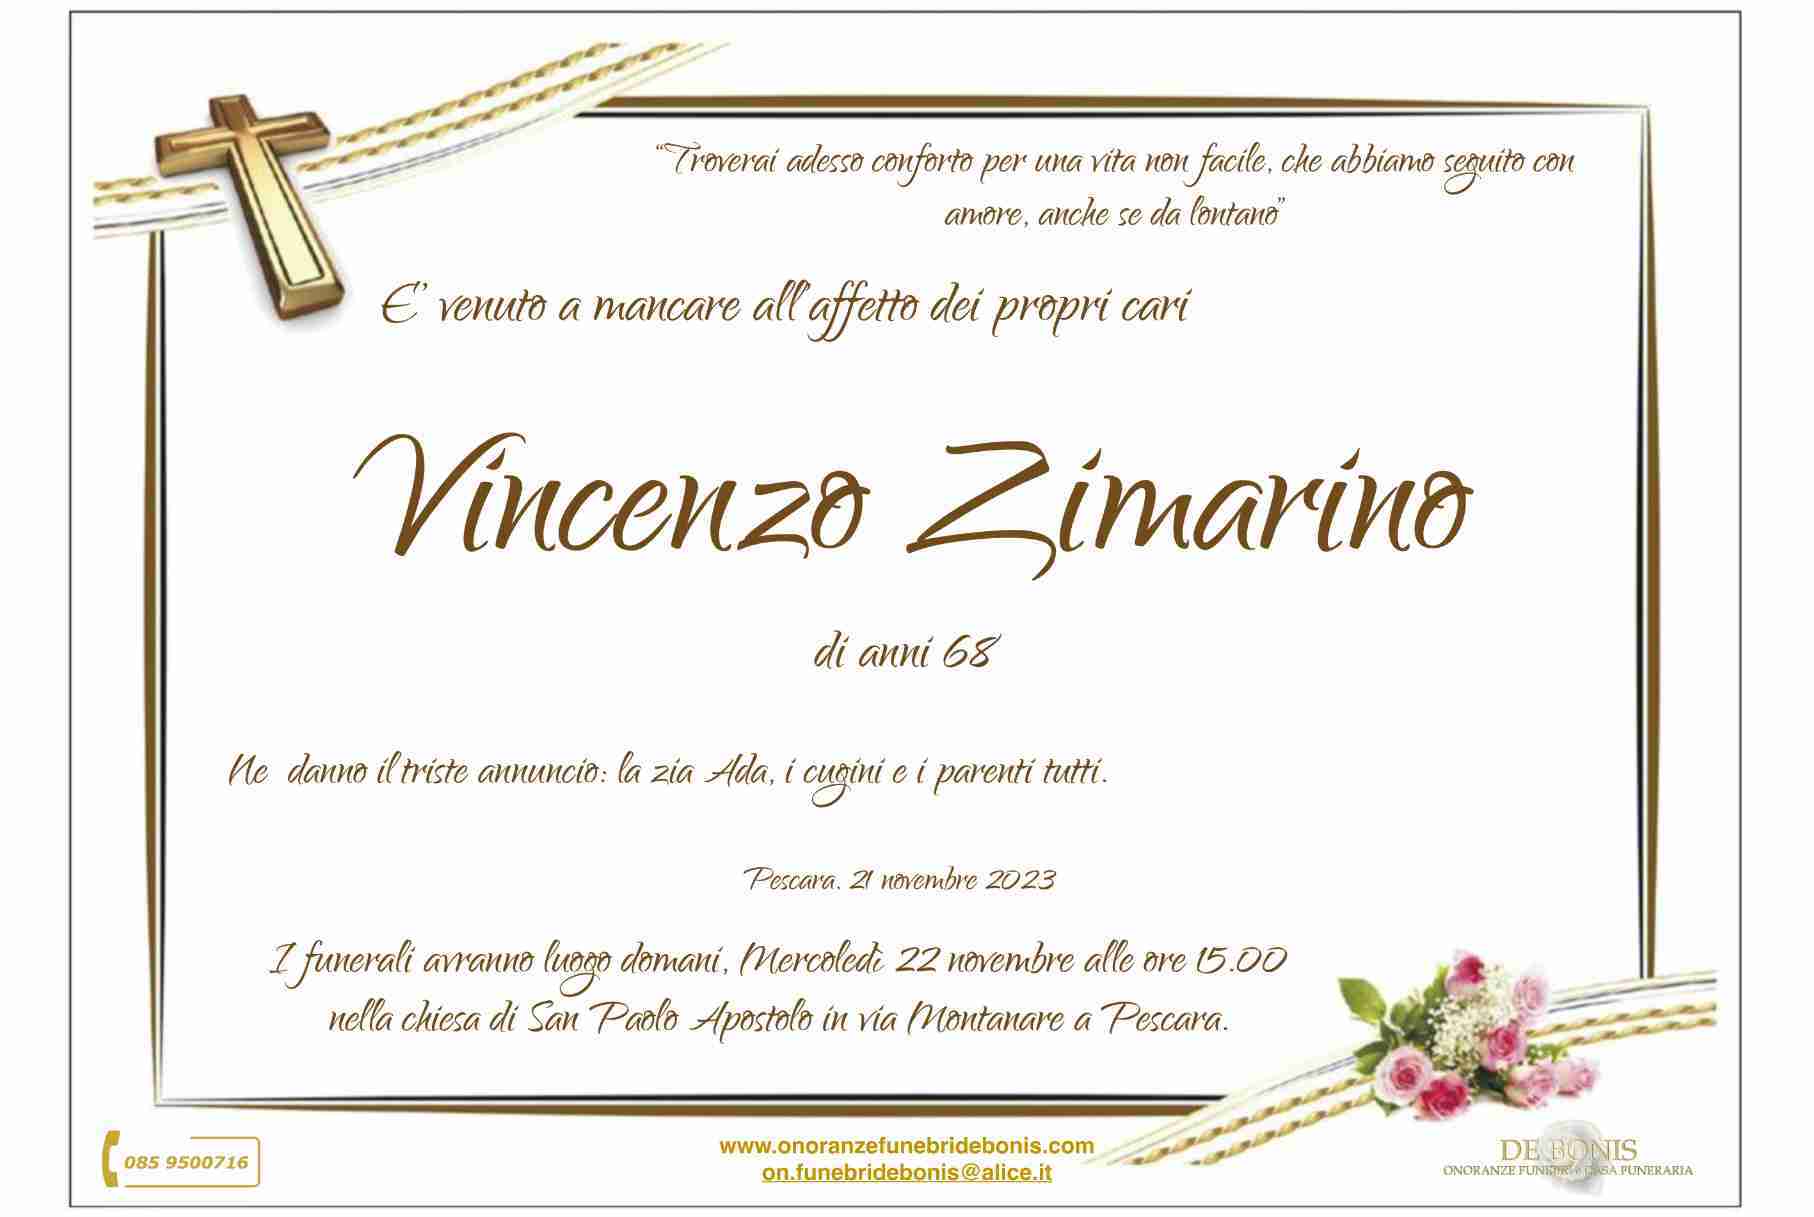 Vincenzo Zimarino